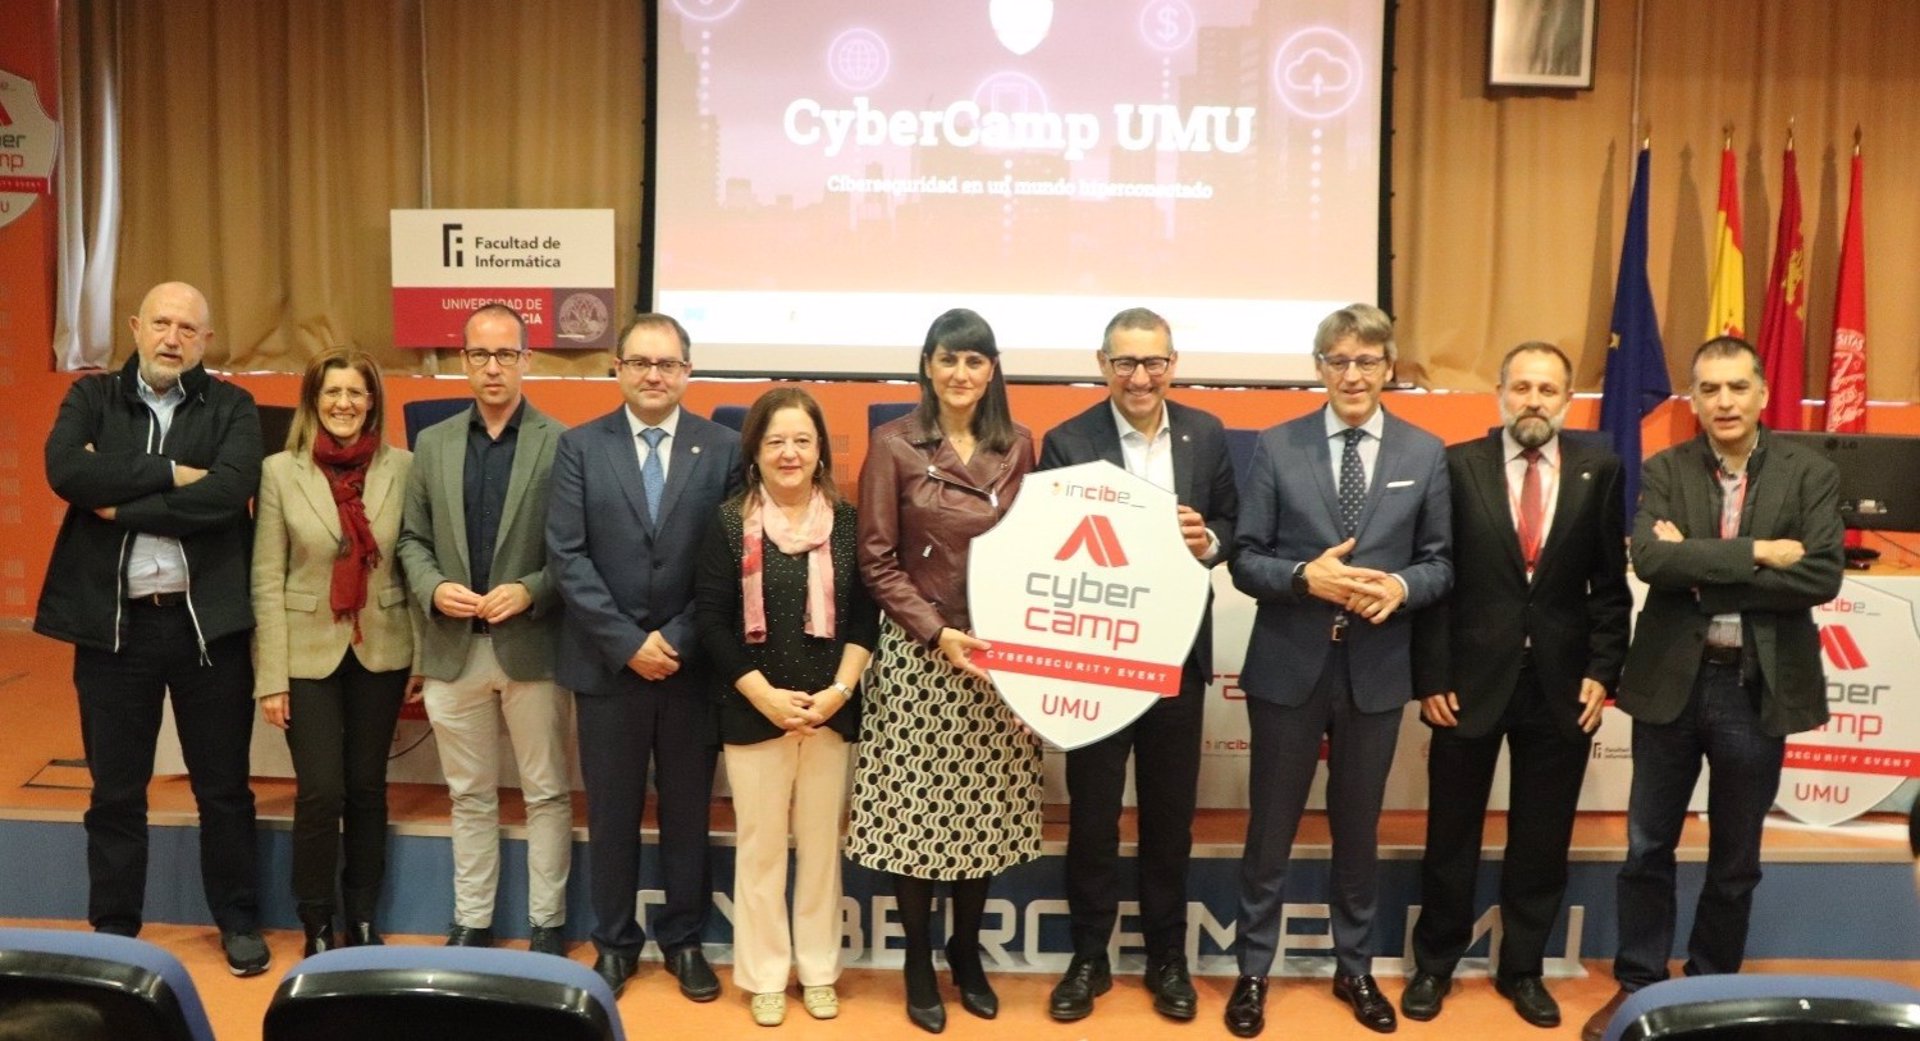 La secretaria de Estado de Telecomunicaciones e Infraestructuras Digitales, María González Veracruz (en el centro sosteniendo un logo), preside un evento en la Universidad de Murcia.